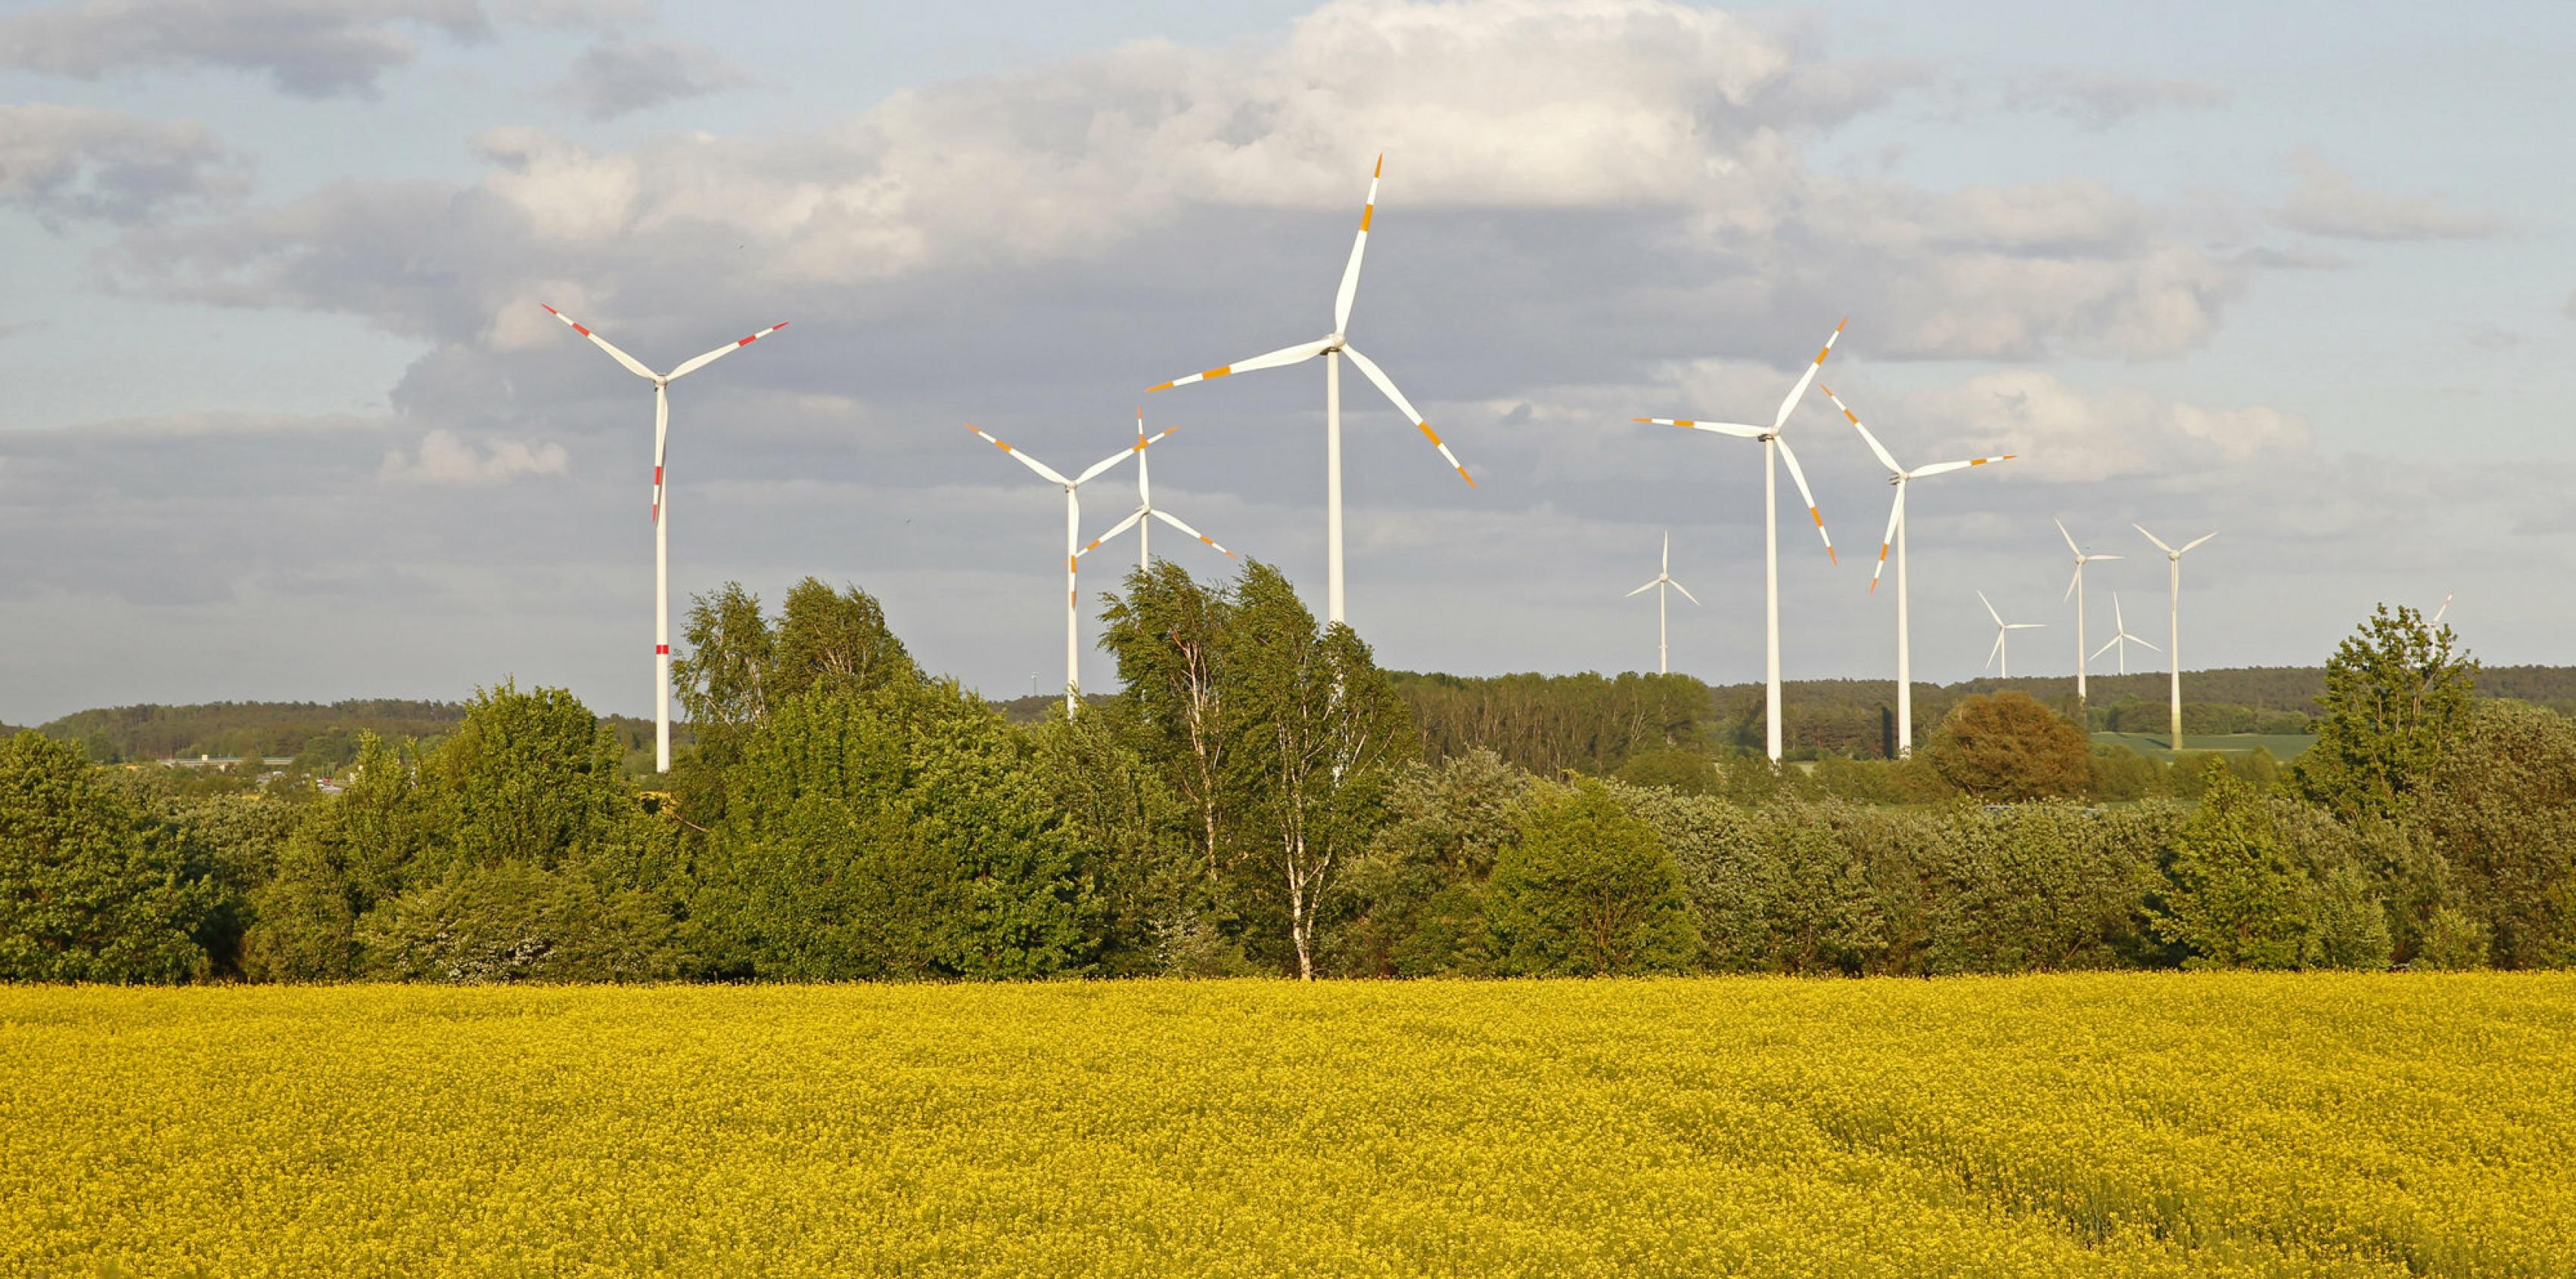 Das Bild zeigt eine brandenburgische Landschaft mit einem blühenden Rapsfeld und Windkraftanlagen.